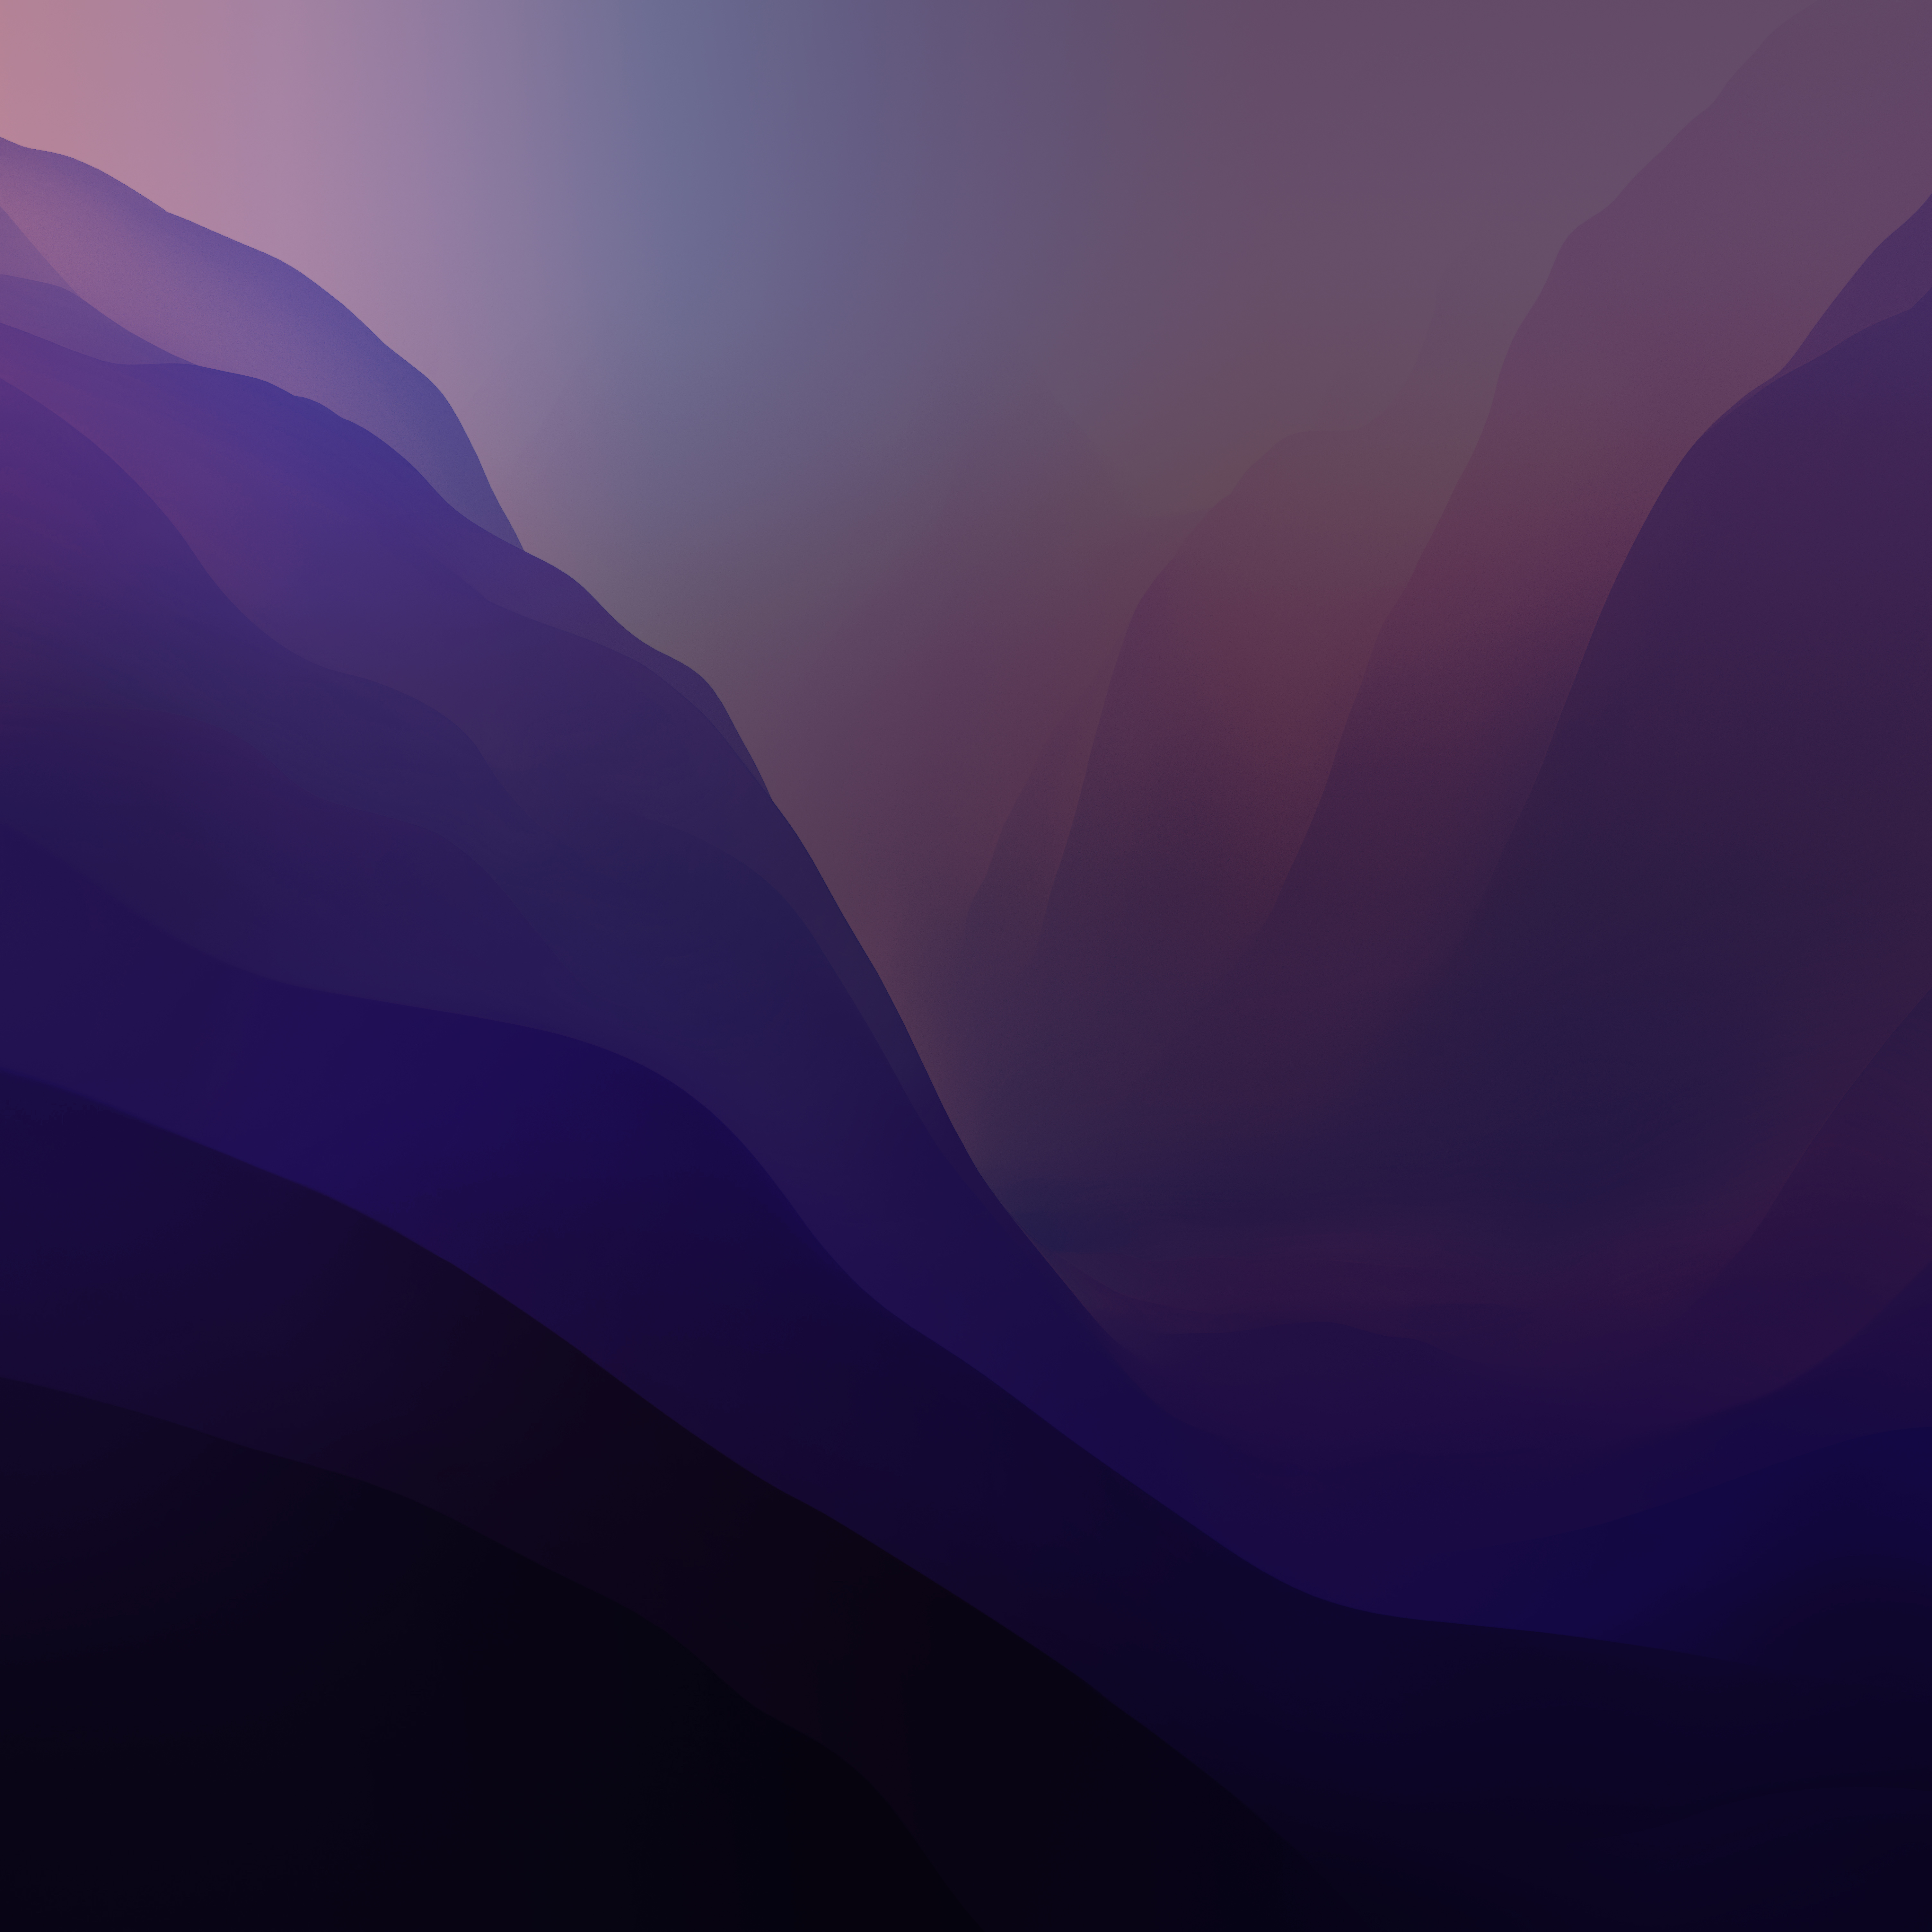 macOS Monterey Alternate Wallpaper in Light and Dark mode